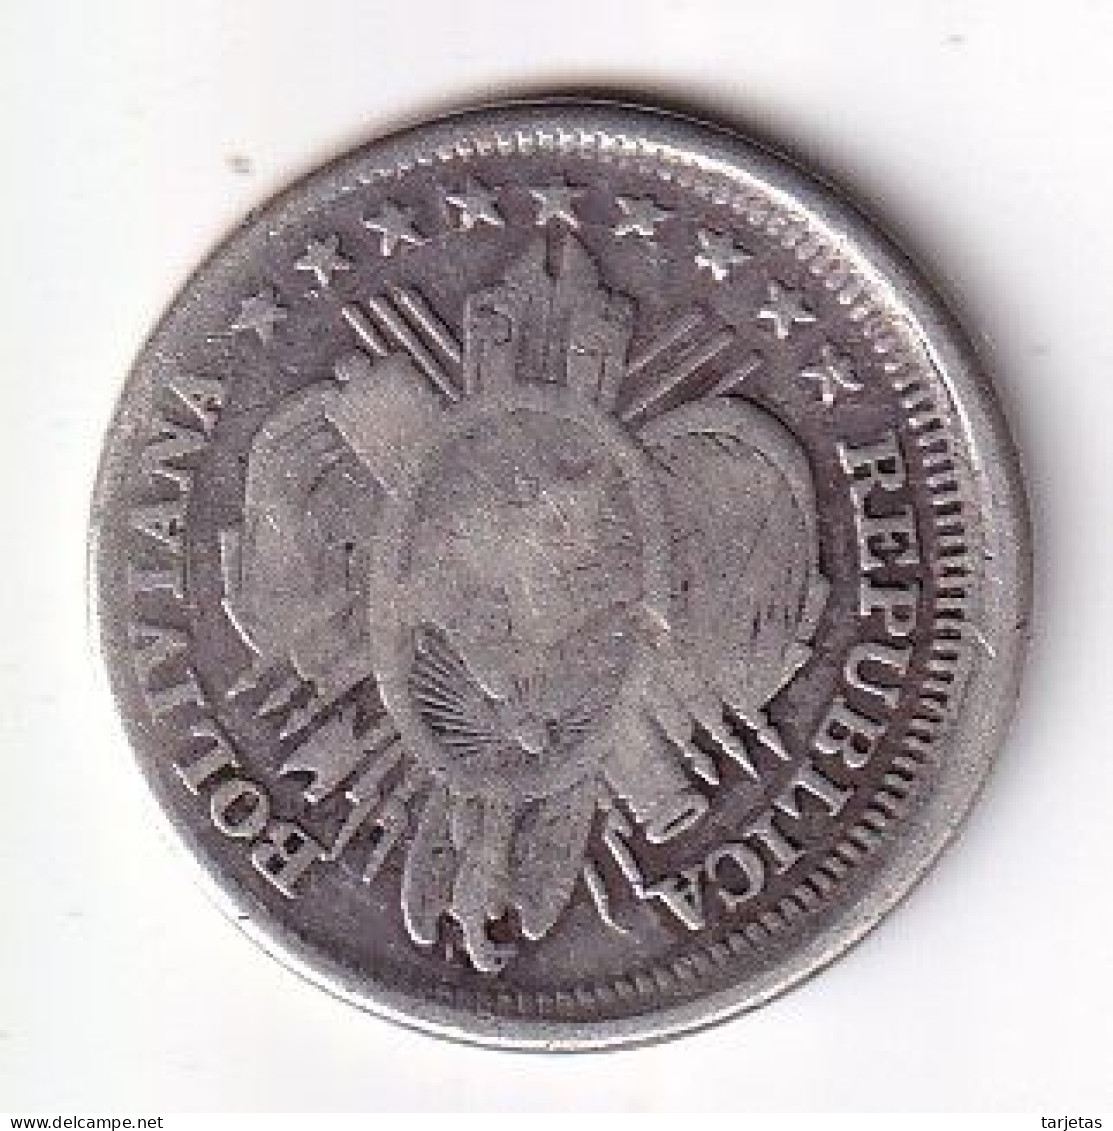 MONEDA DE PLATA DE BOLIVIA DE 20 CENTAVOS DEL AÑO 1890  (COIN) SILVER,ARGENT. - Bolivie